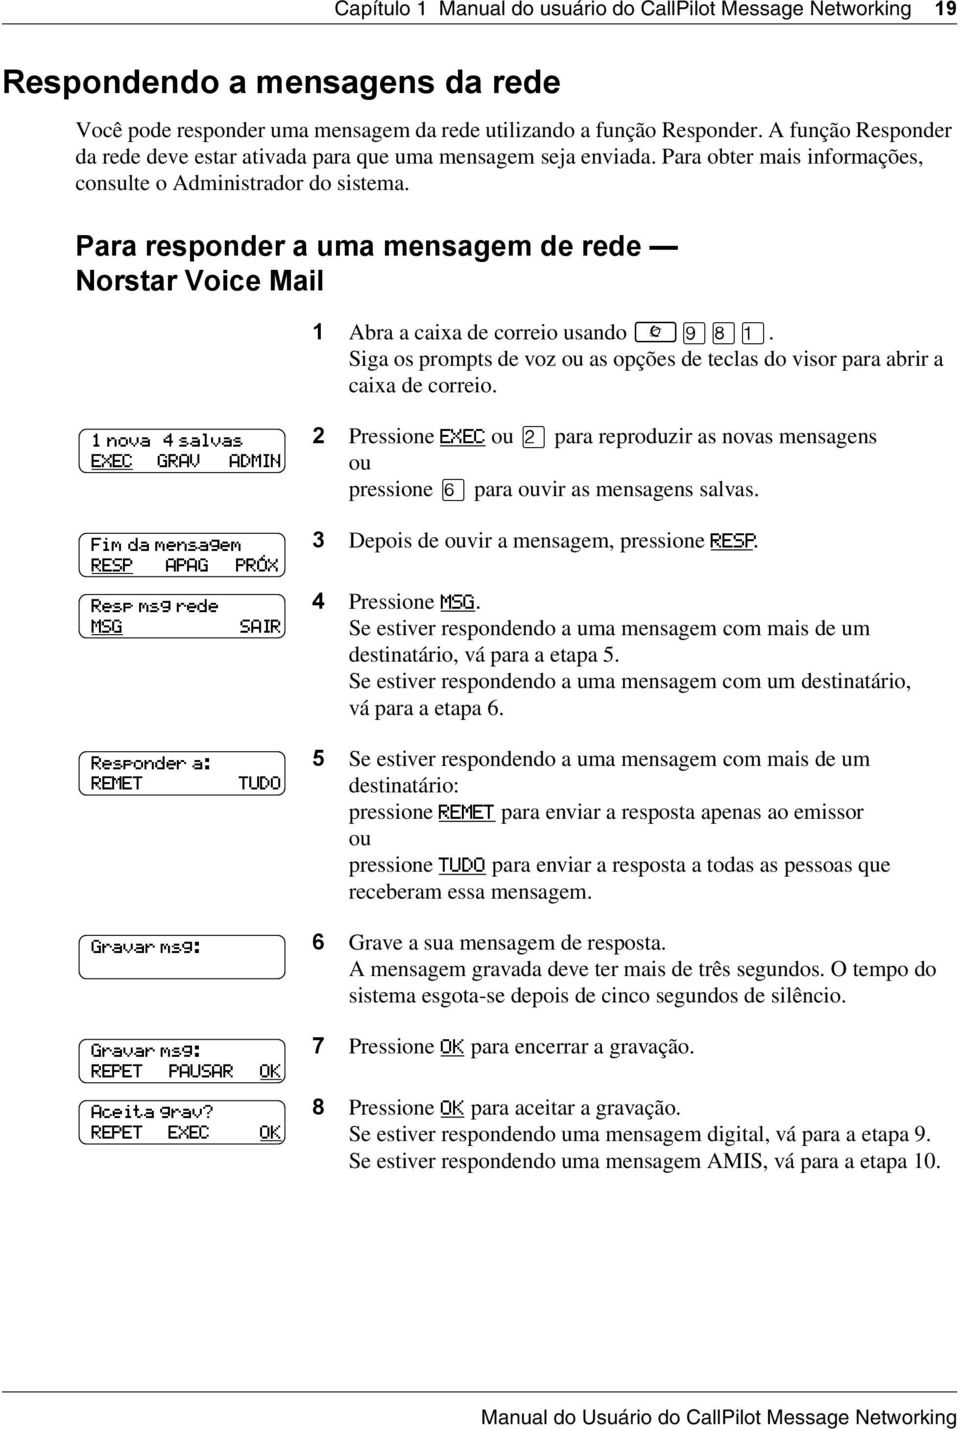 Para responder a uma mensagem de rede Norstar Voice Mail 1 Abra a caixa de correio usando. Siga os prompts de voz as opções de teclas do visor para abrir a caixa de correio.